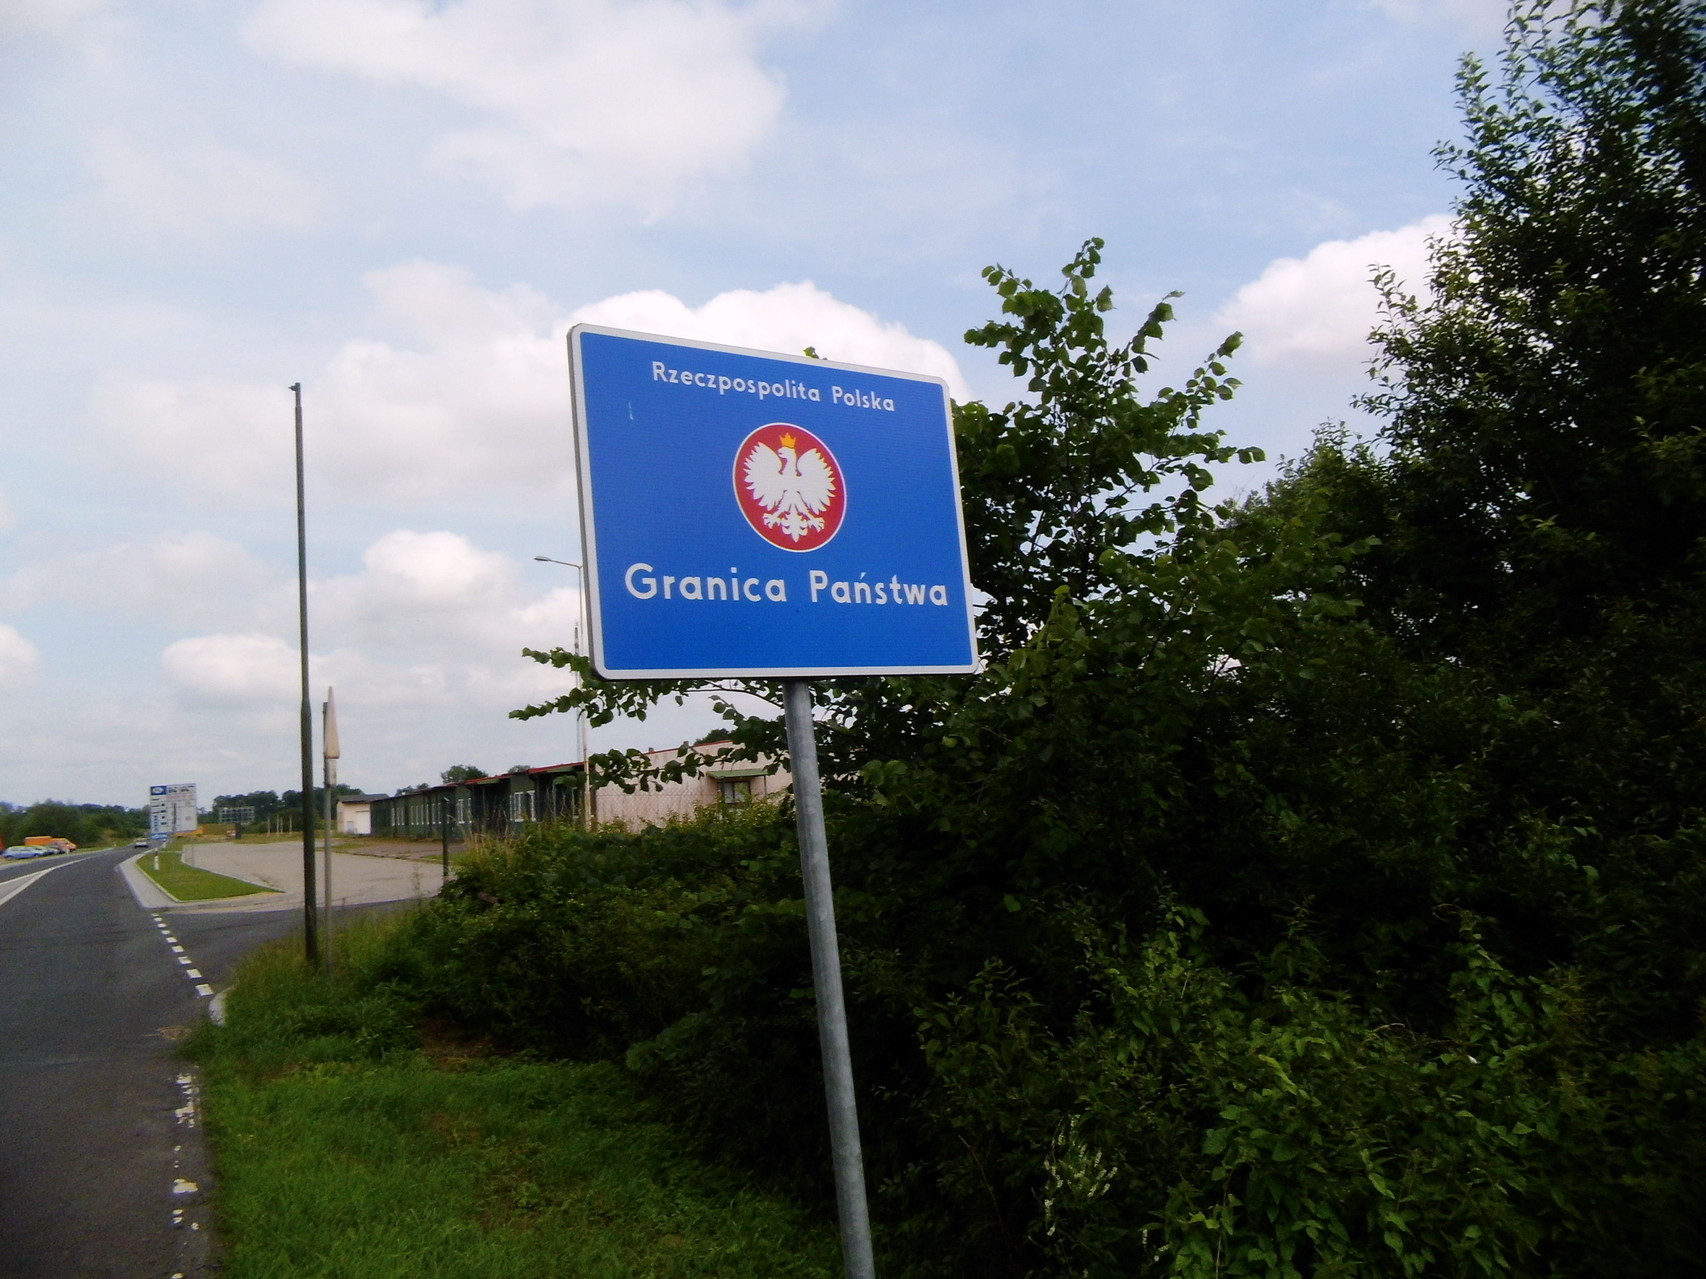 Ankunft in Polska nach fast exakt 1000 Kilometer